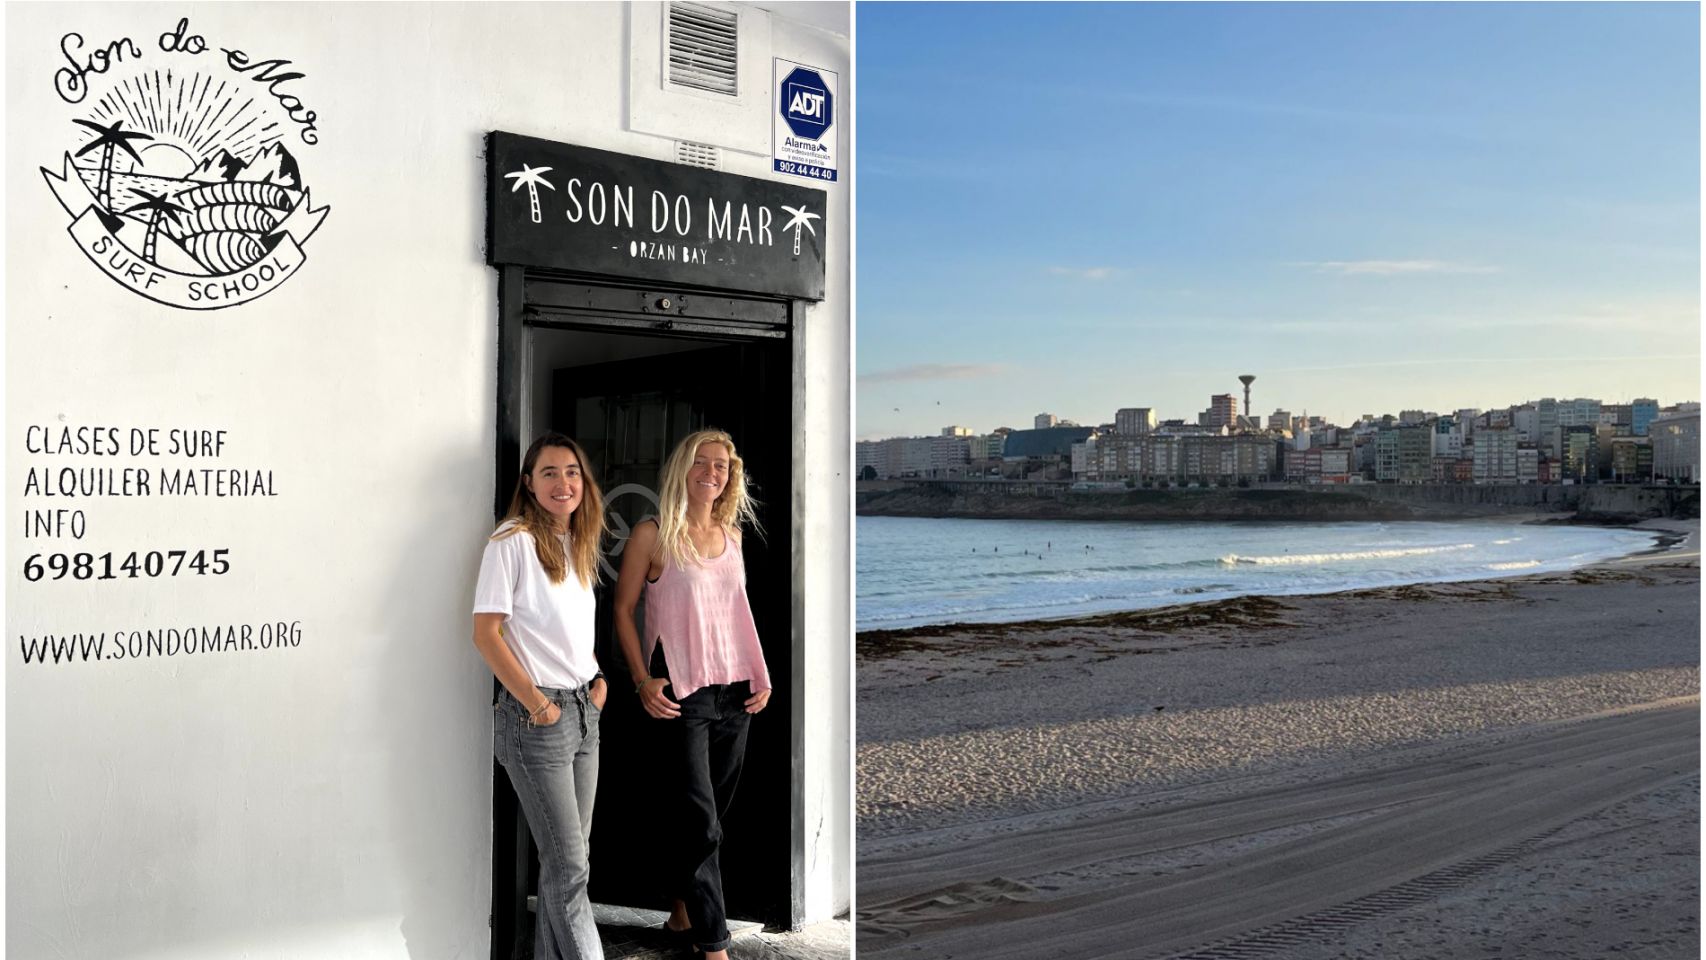 La escuela de surf Son do Mar ha abierto sus puertas esta semana en el Orzán